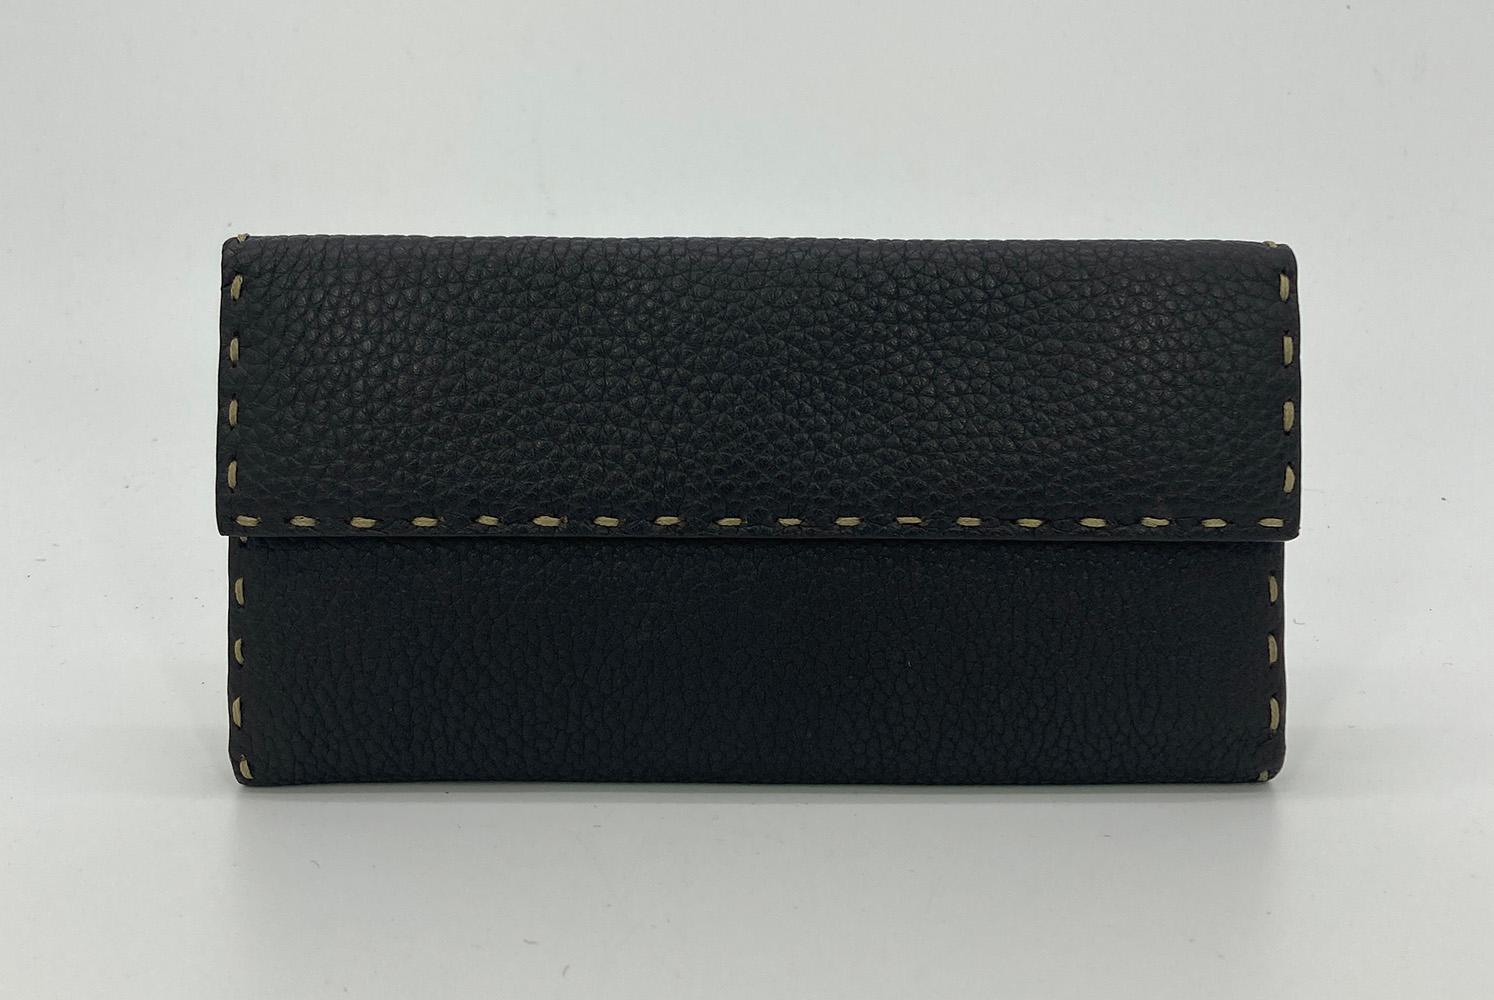 Fendi Dark Brown Leather Continental Wallet in sehr gutem Zustand. Dunkelbraunes Selleria-Leder mit cremefarbenen Steppnähten an den Kanten. Der Druckknopfverschluss an der Vorderseite öffnet sich durch eine doppelte Faltung zu einem Innenraum aus